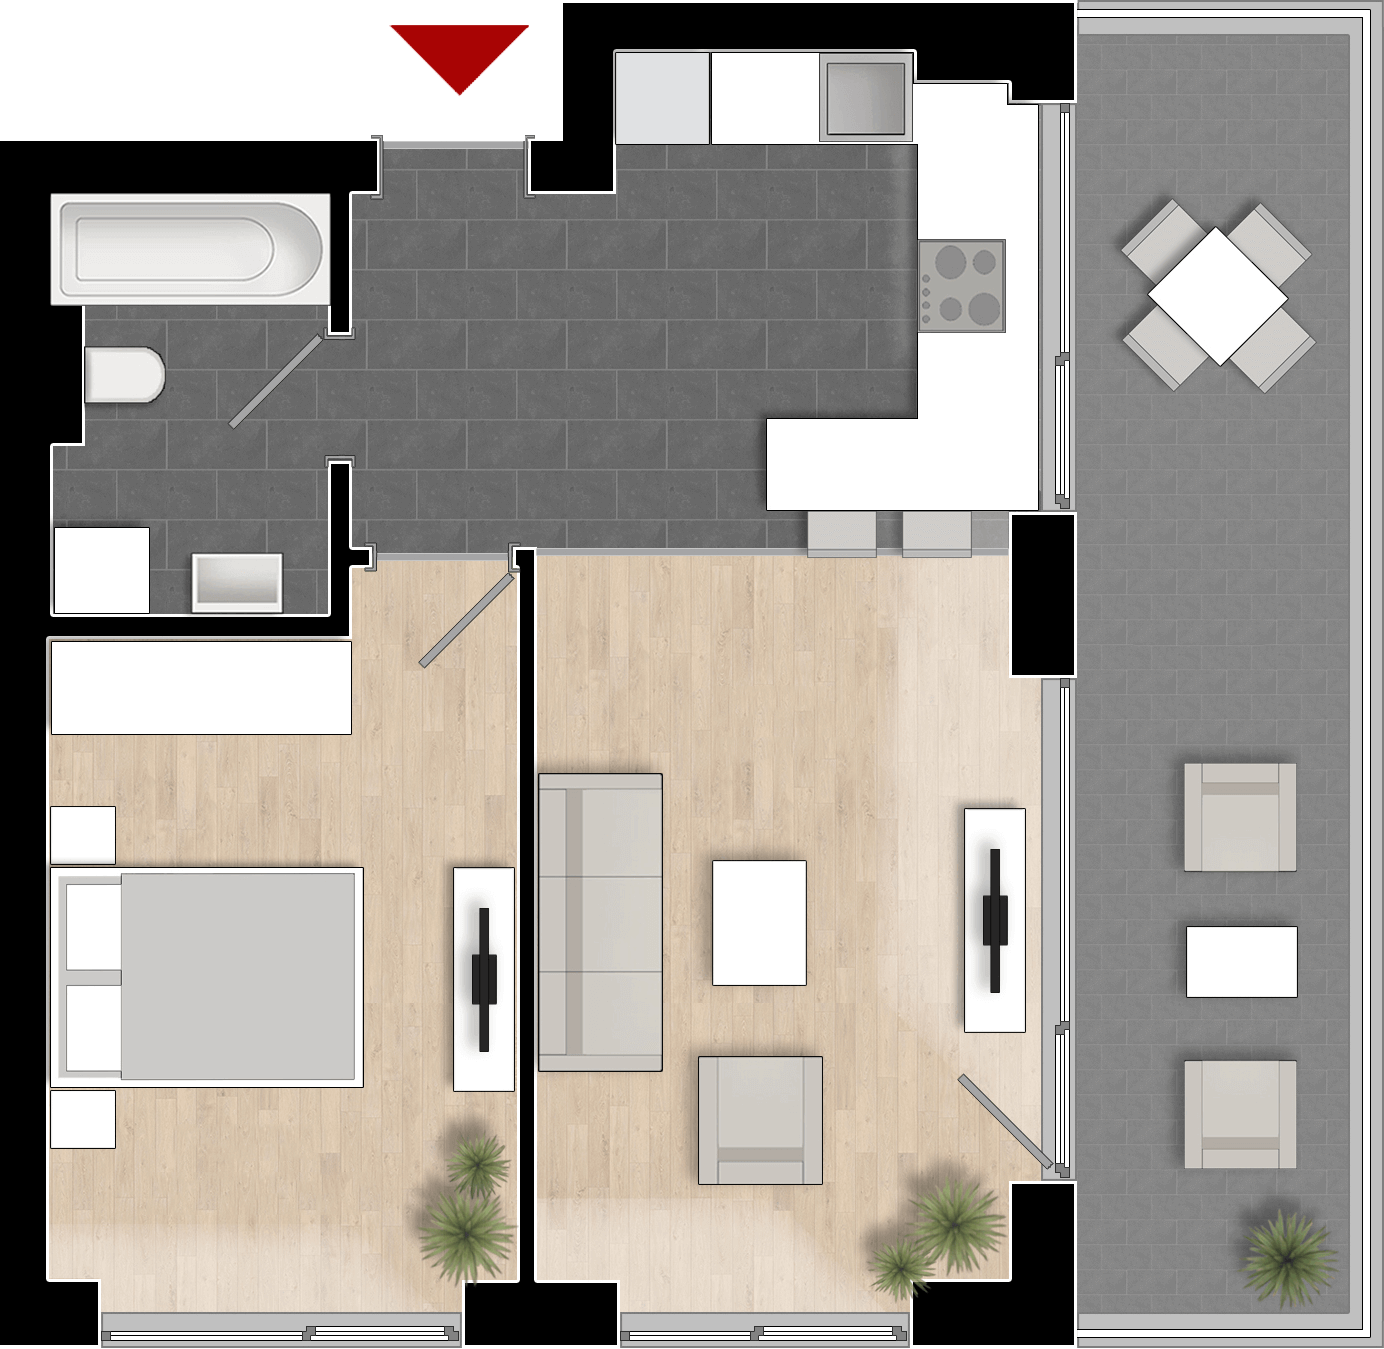  Apartament Tip 1B cu 2 camere 